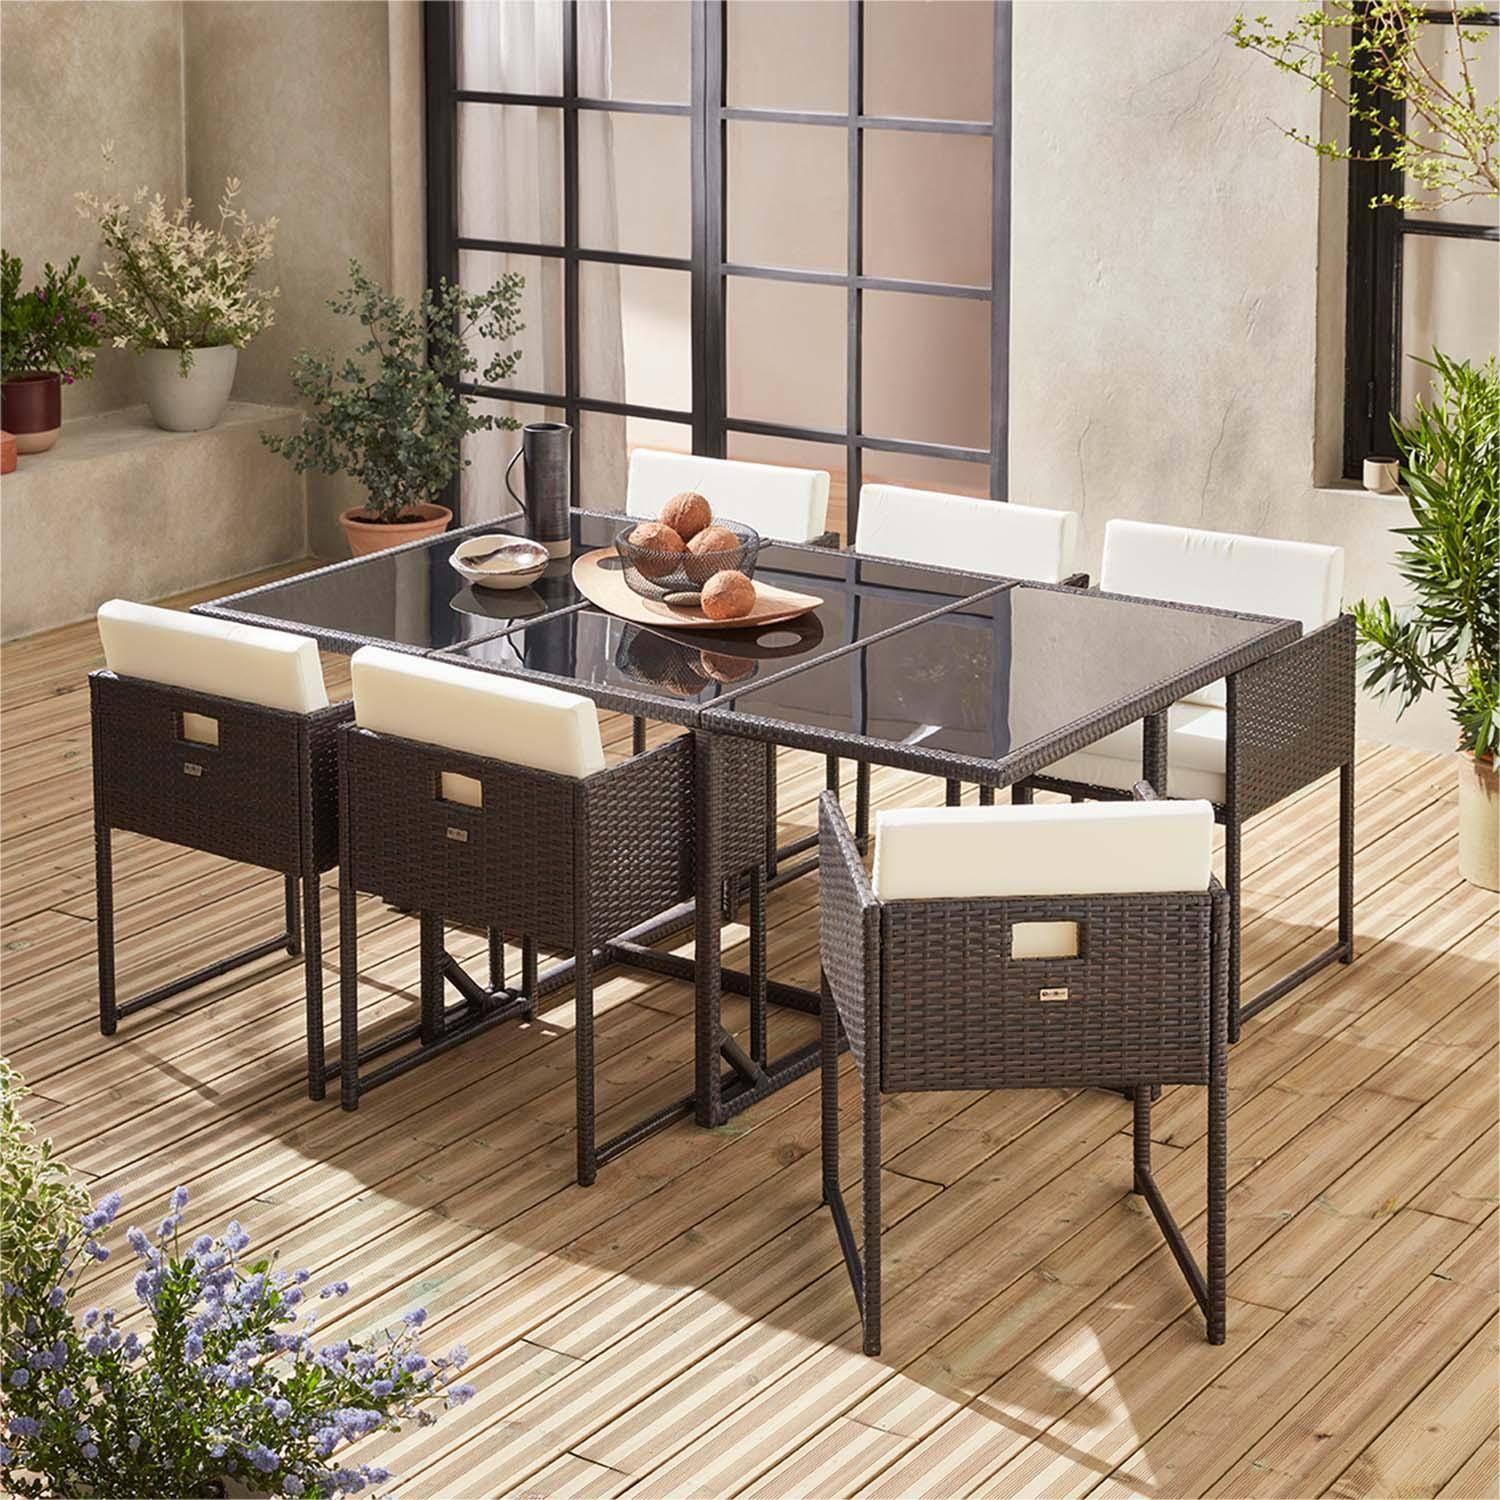 Table de jardin en résine 6 places – FIRENZE 6 – coloris marron, coussins blancs, table encastrable Photo8